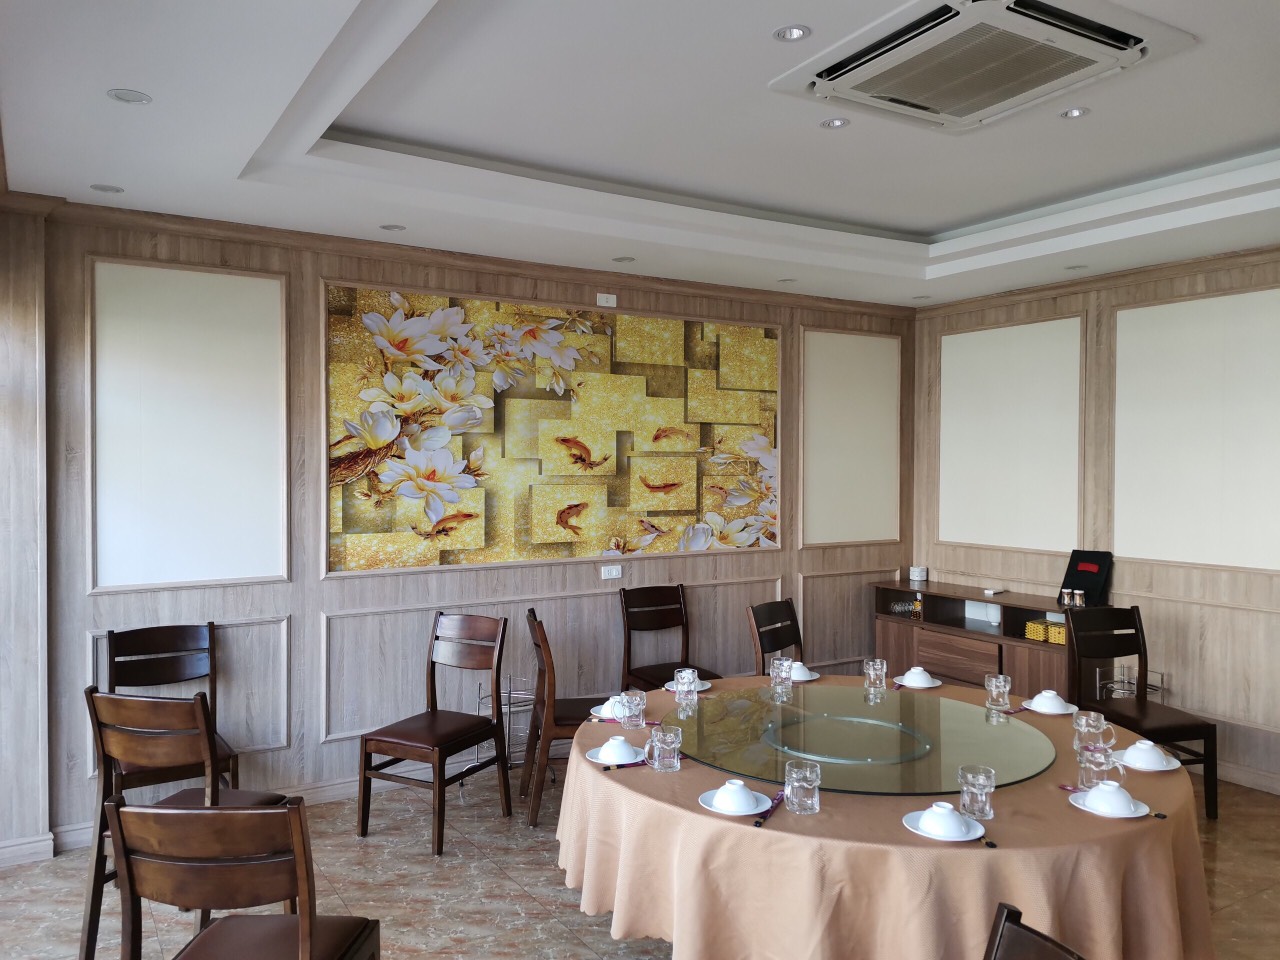 Tam op AnPro 2 - A beautiful modern restaurant design with wood grain wall panels